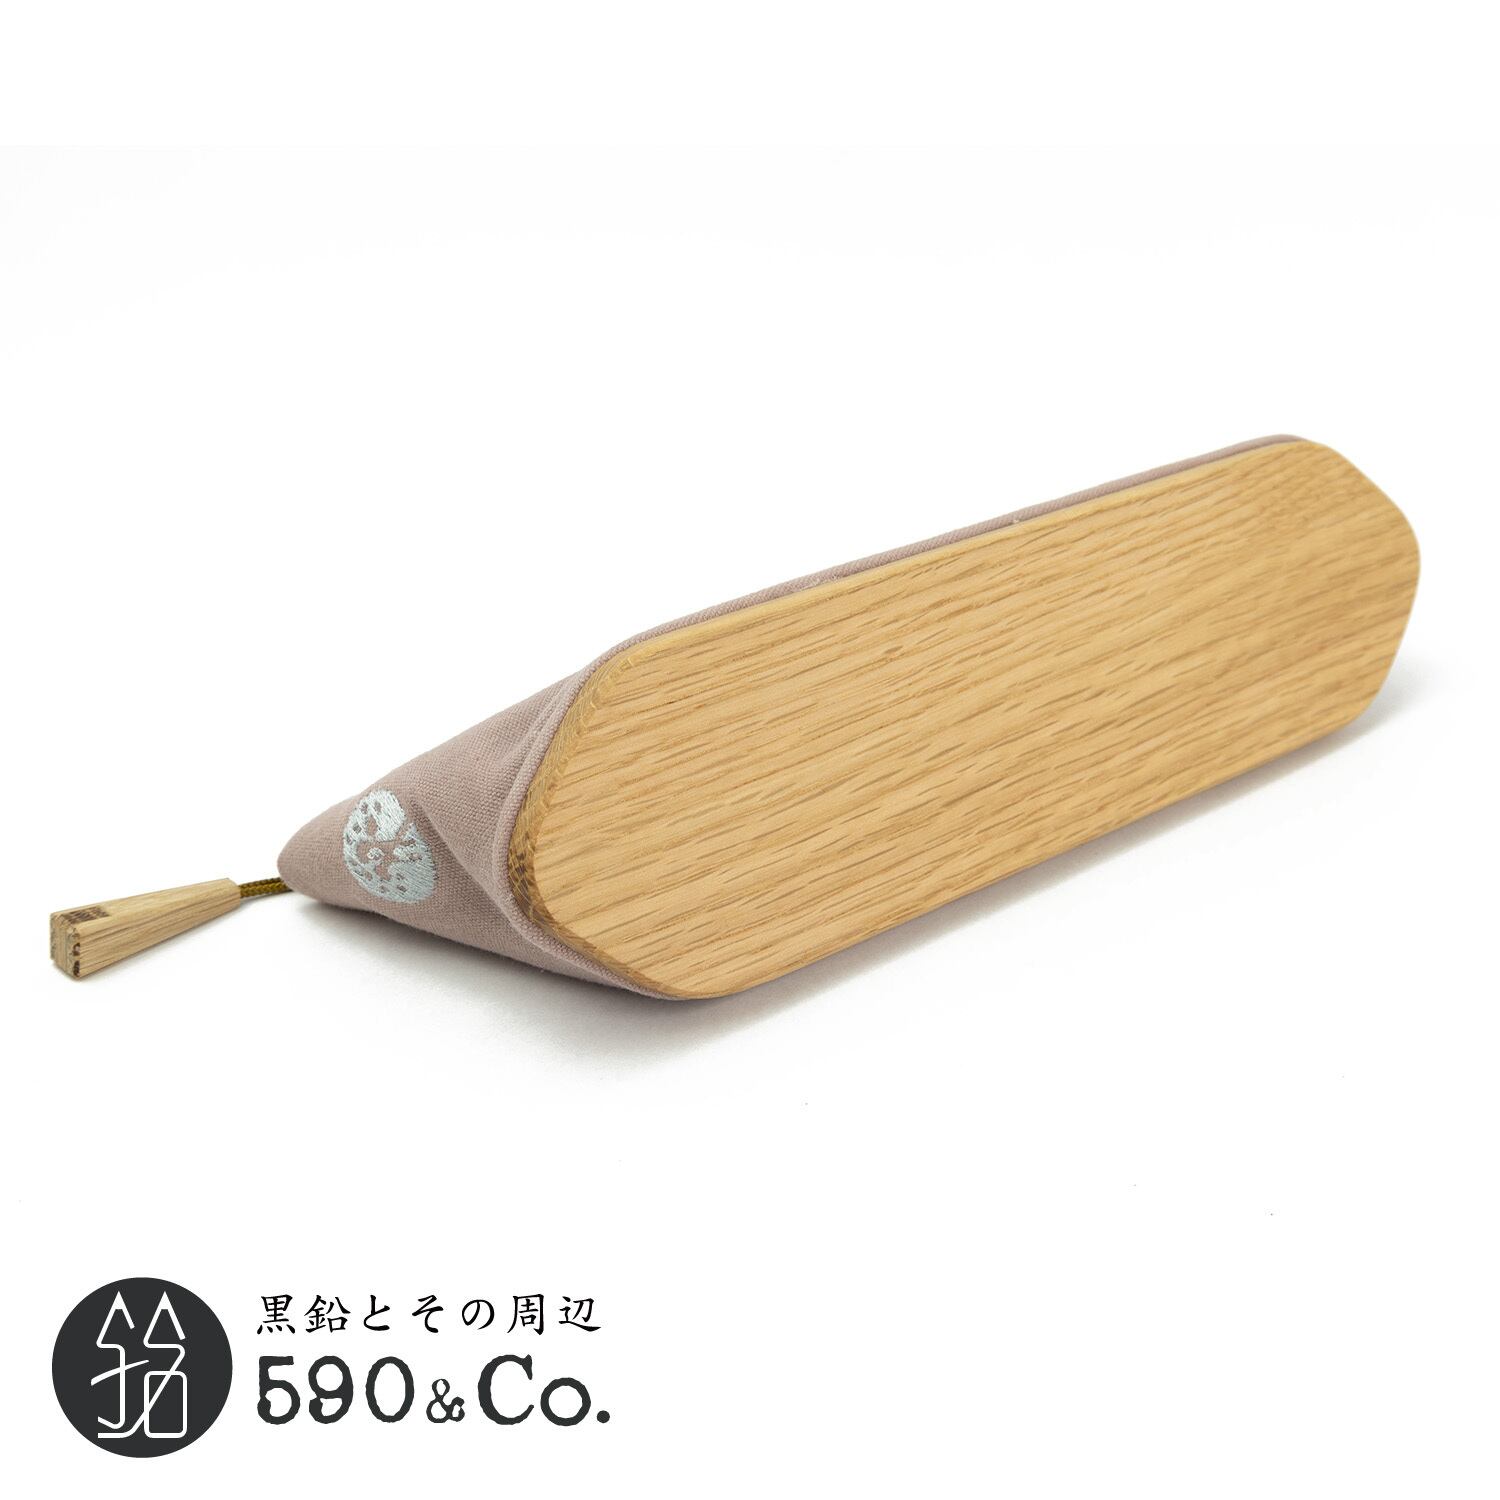 【キナリ木工所】pencase 79 canvas × wood S (オールドピンク) 590Co.